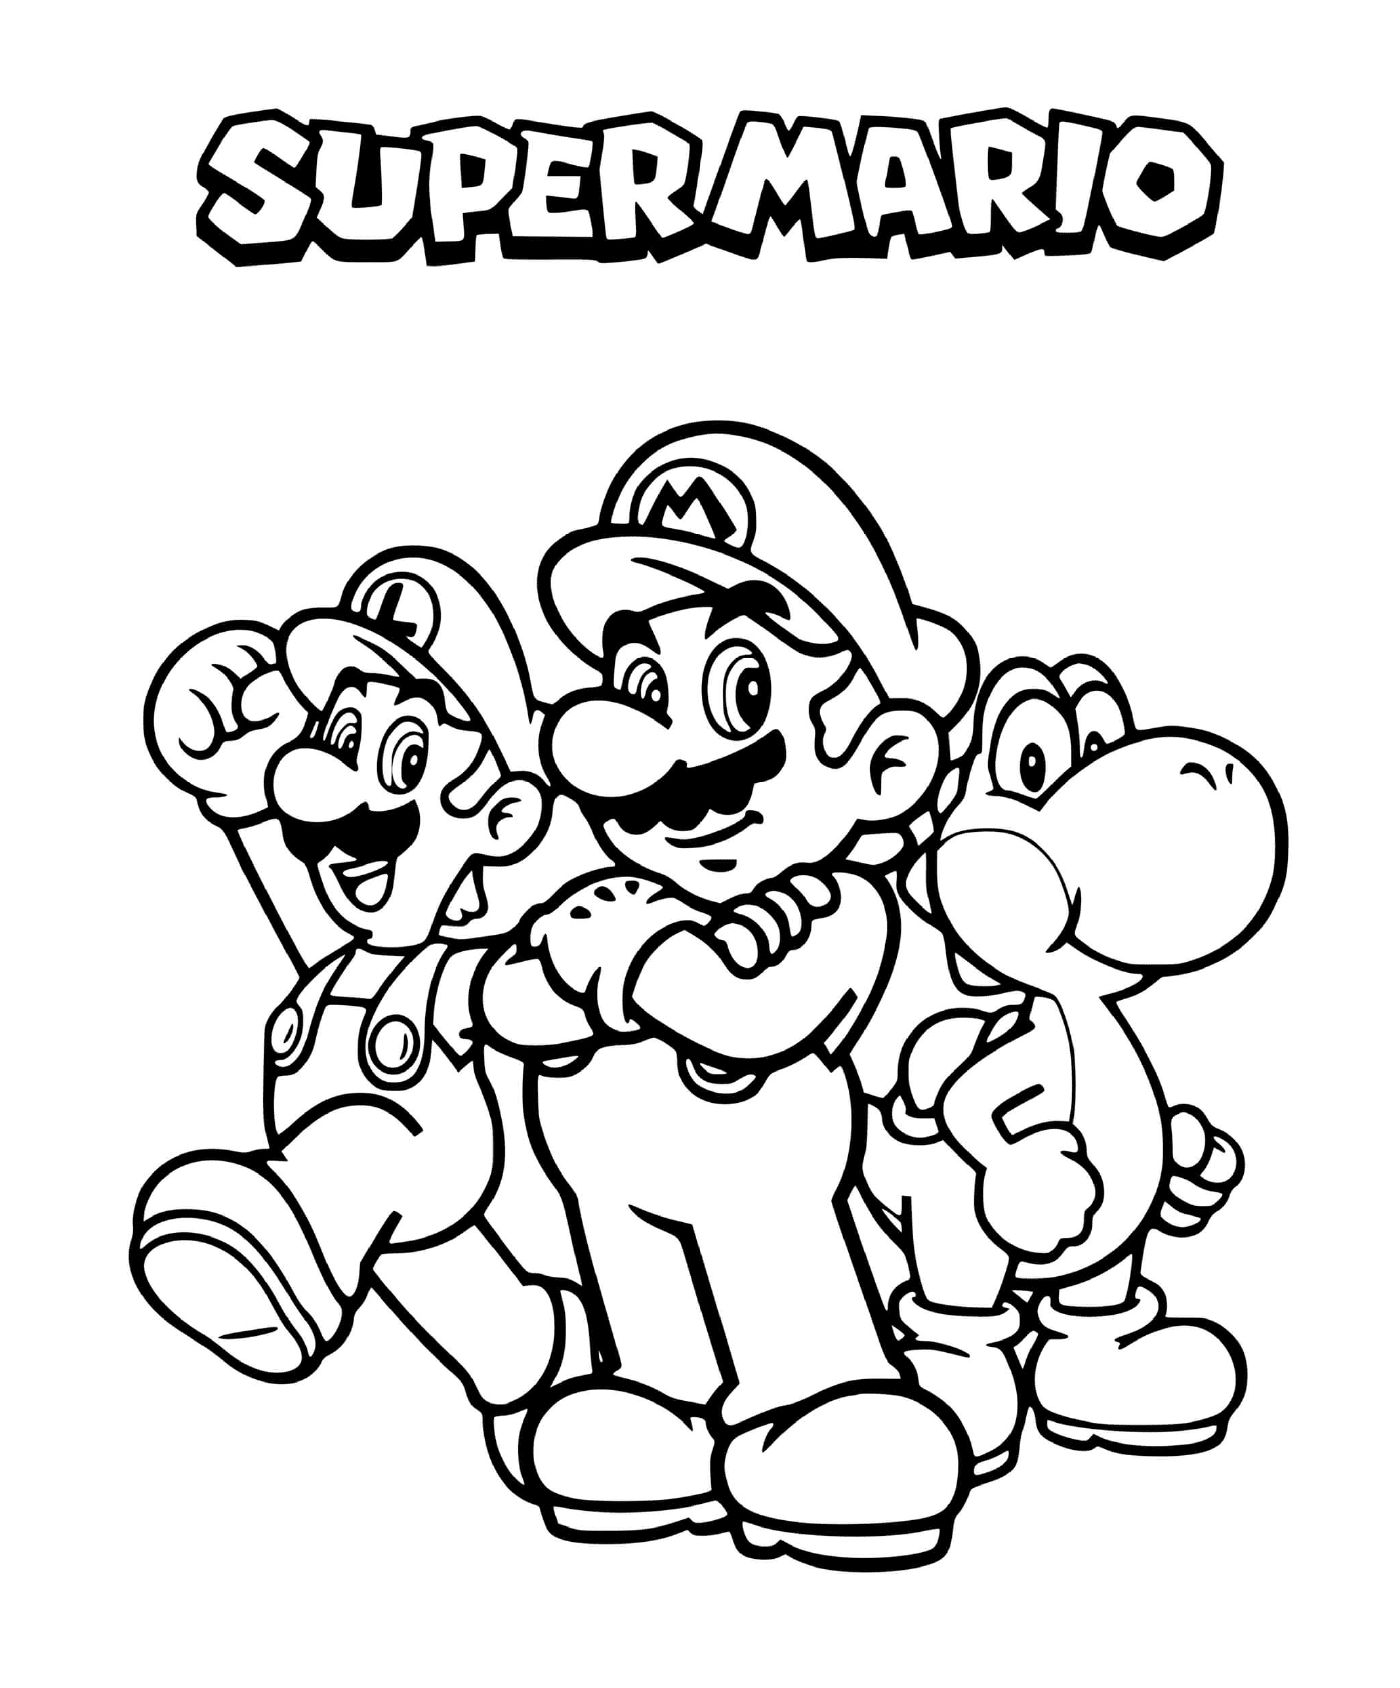   L'équipe de tonnerre : Mario, Luigi et Yoshi 